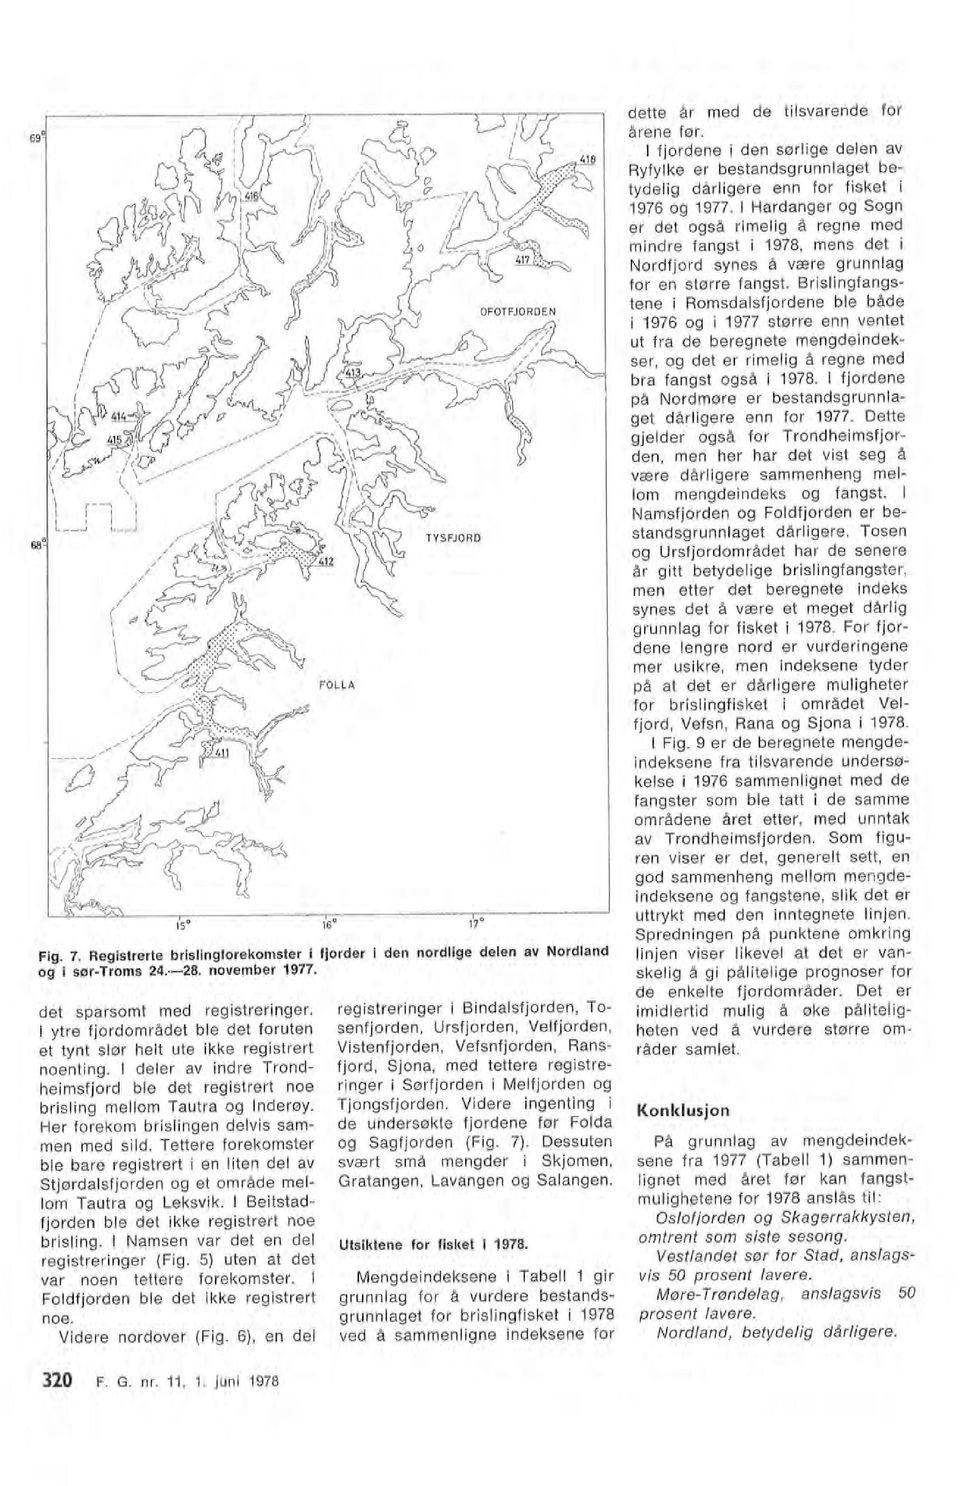 Brisingfangstene i Romsdasfjordene be både i f976 og i 1977 større enn ventet ut fra de beregnete mengdeindekser, og det er rimeig å regne med bra fangst også i 1978.